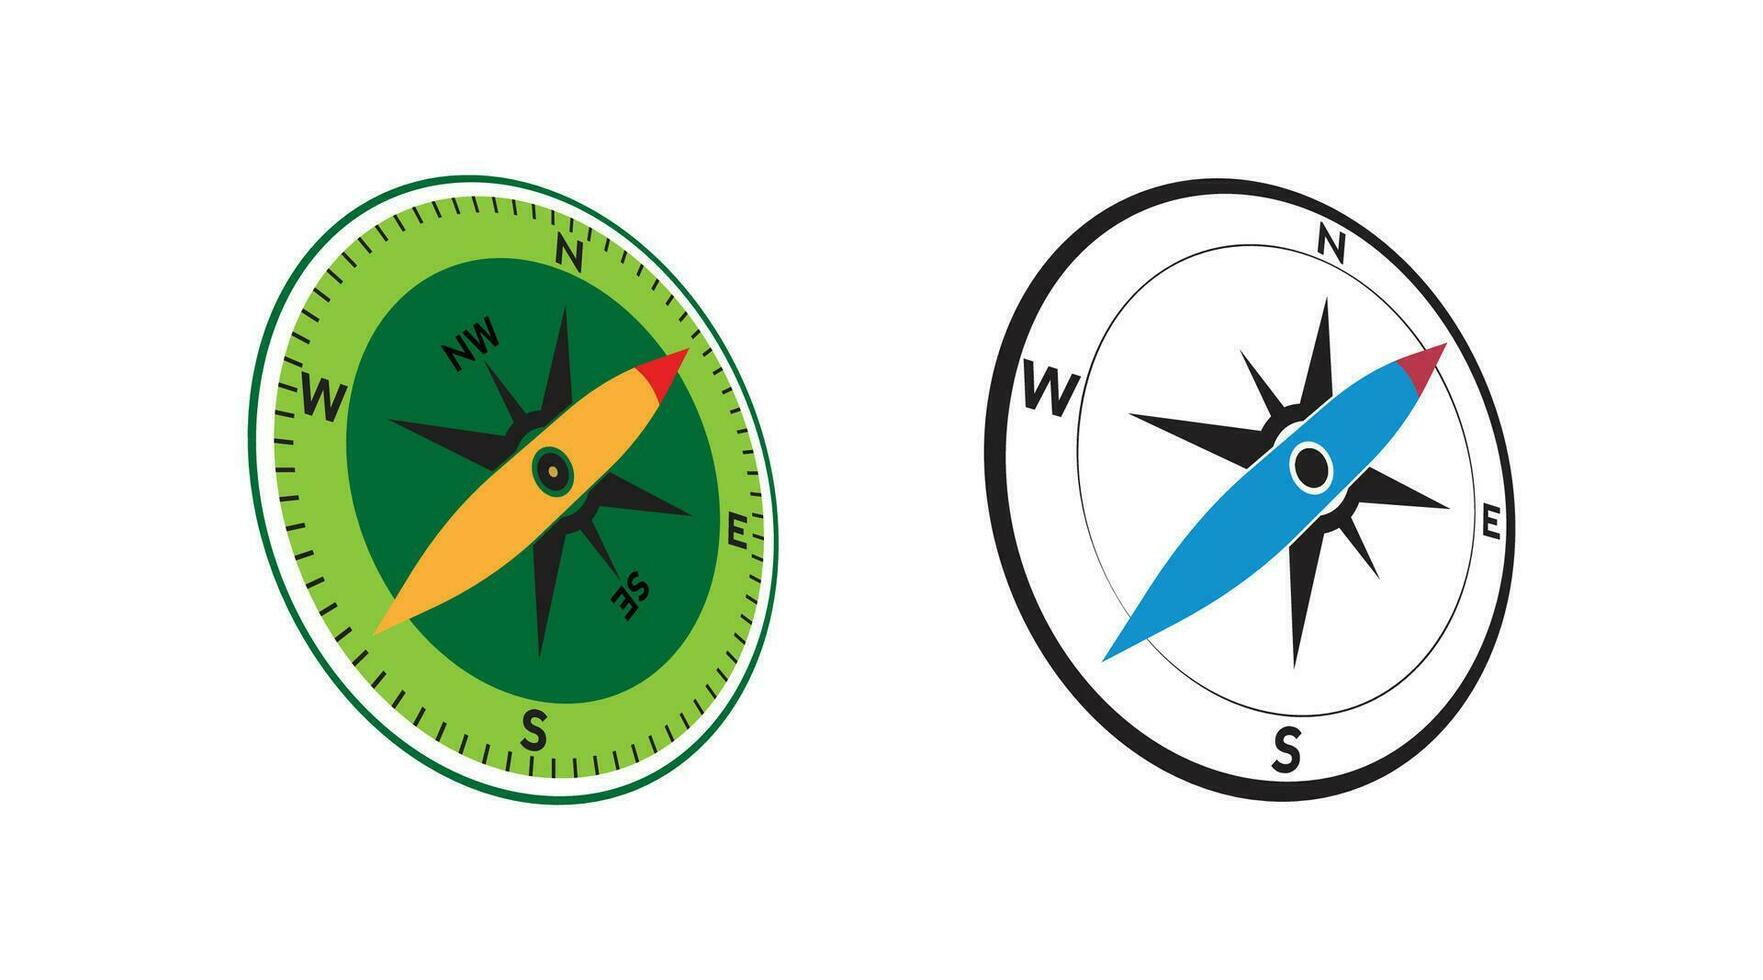 Kompass Logo Design. Zeiger Norden, Süd, Ost, Westen, Kompass Symbol. Richtung unterzeichnen. Vektor Element Illustration.